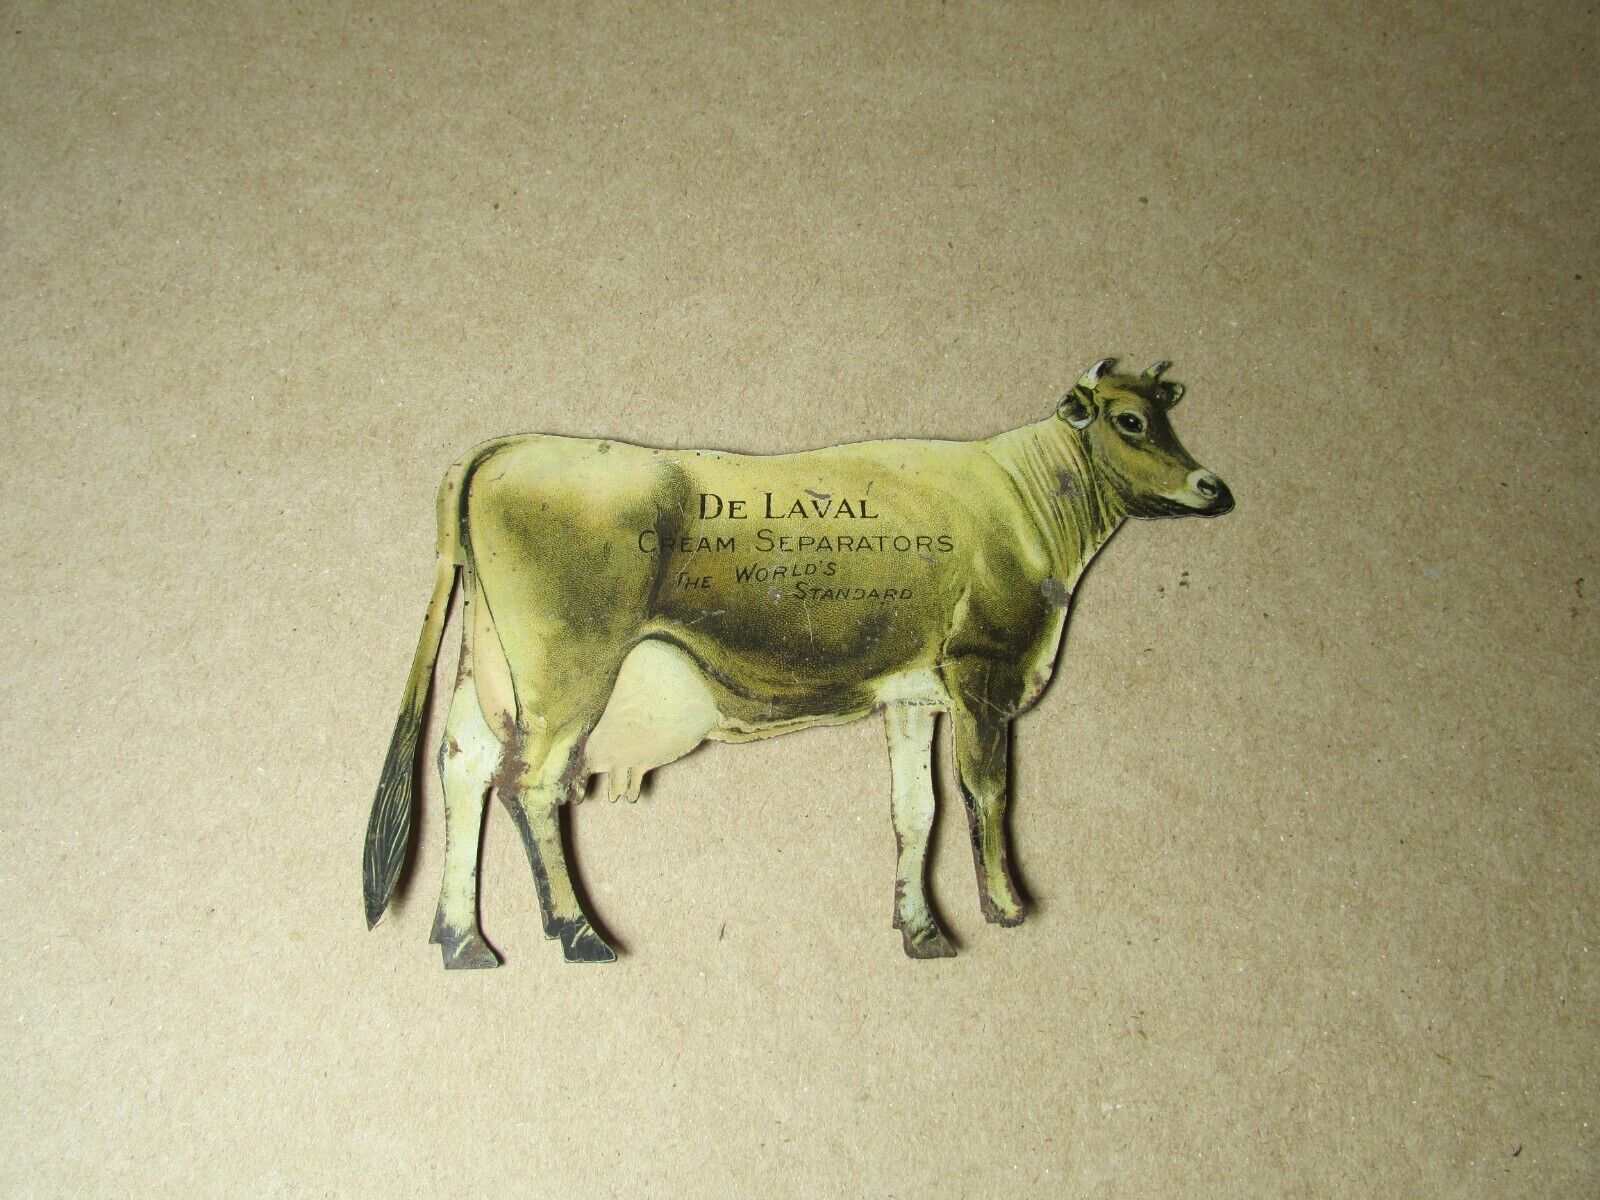 Antique DE LAVAL DeLaval Cream Separators Double Sided Cow Tin Litho Die Cut